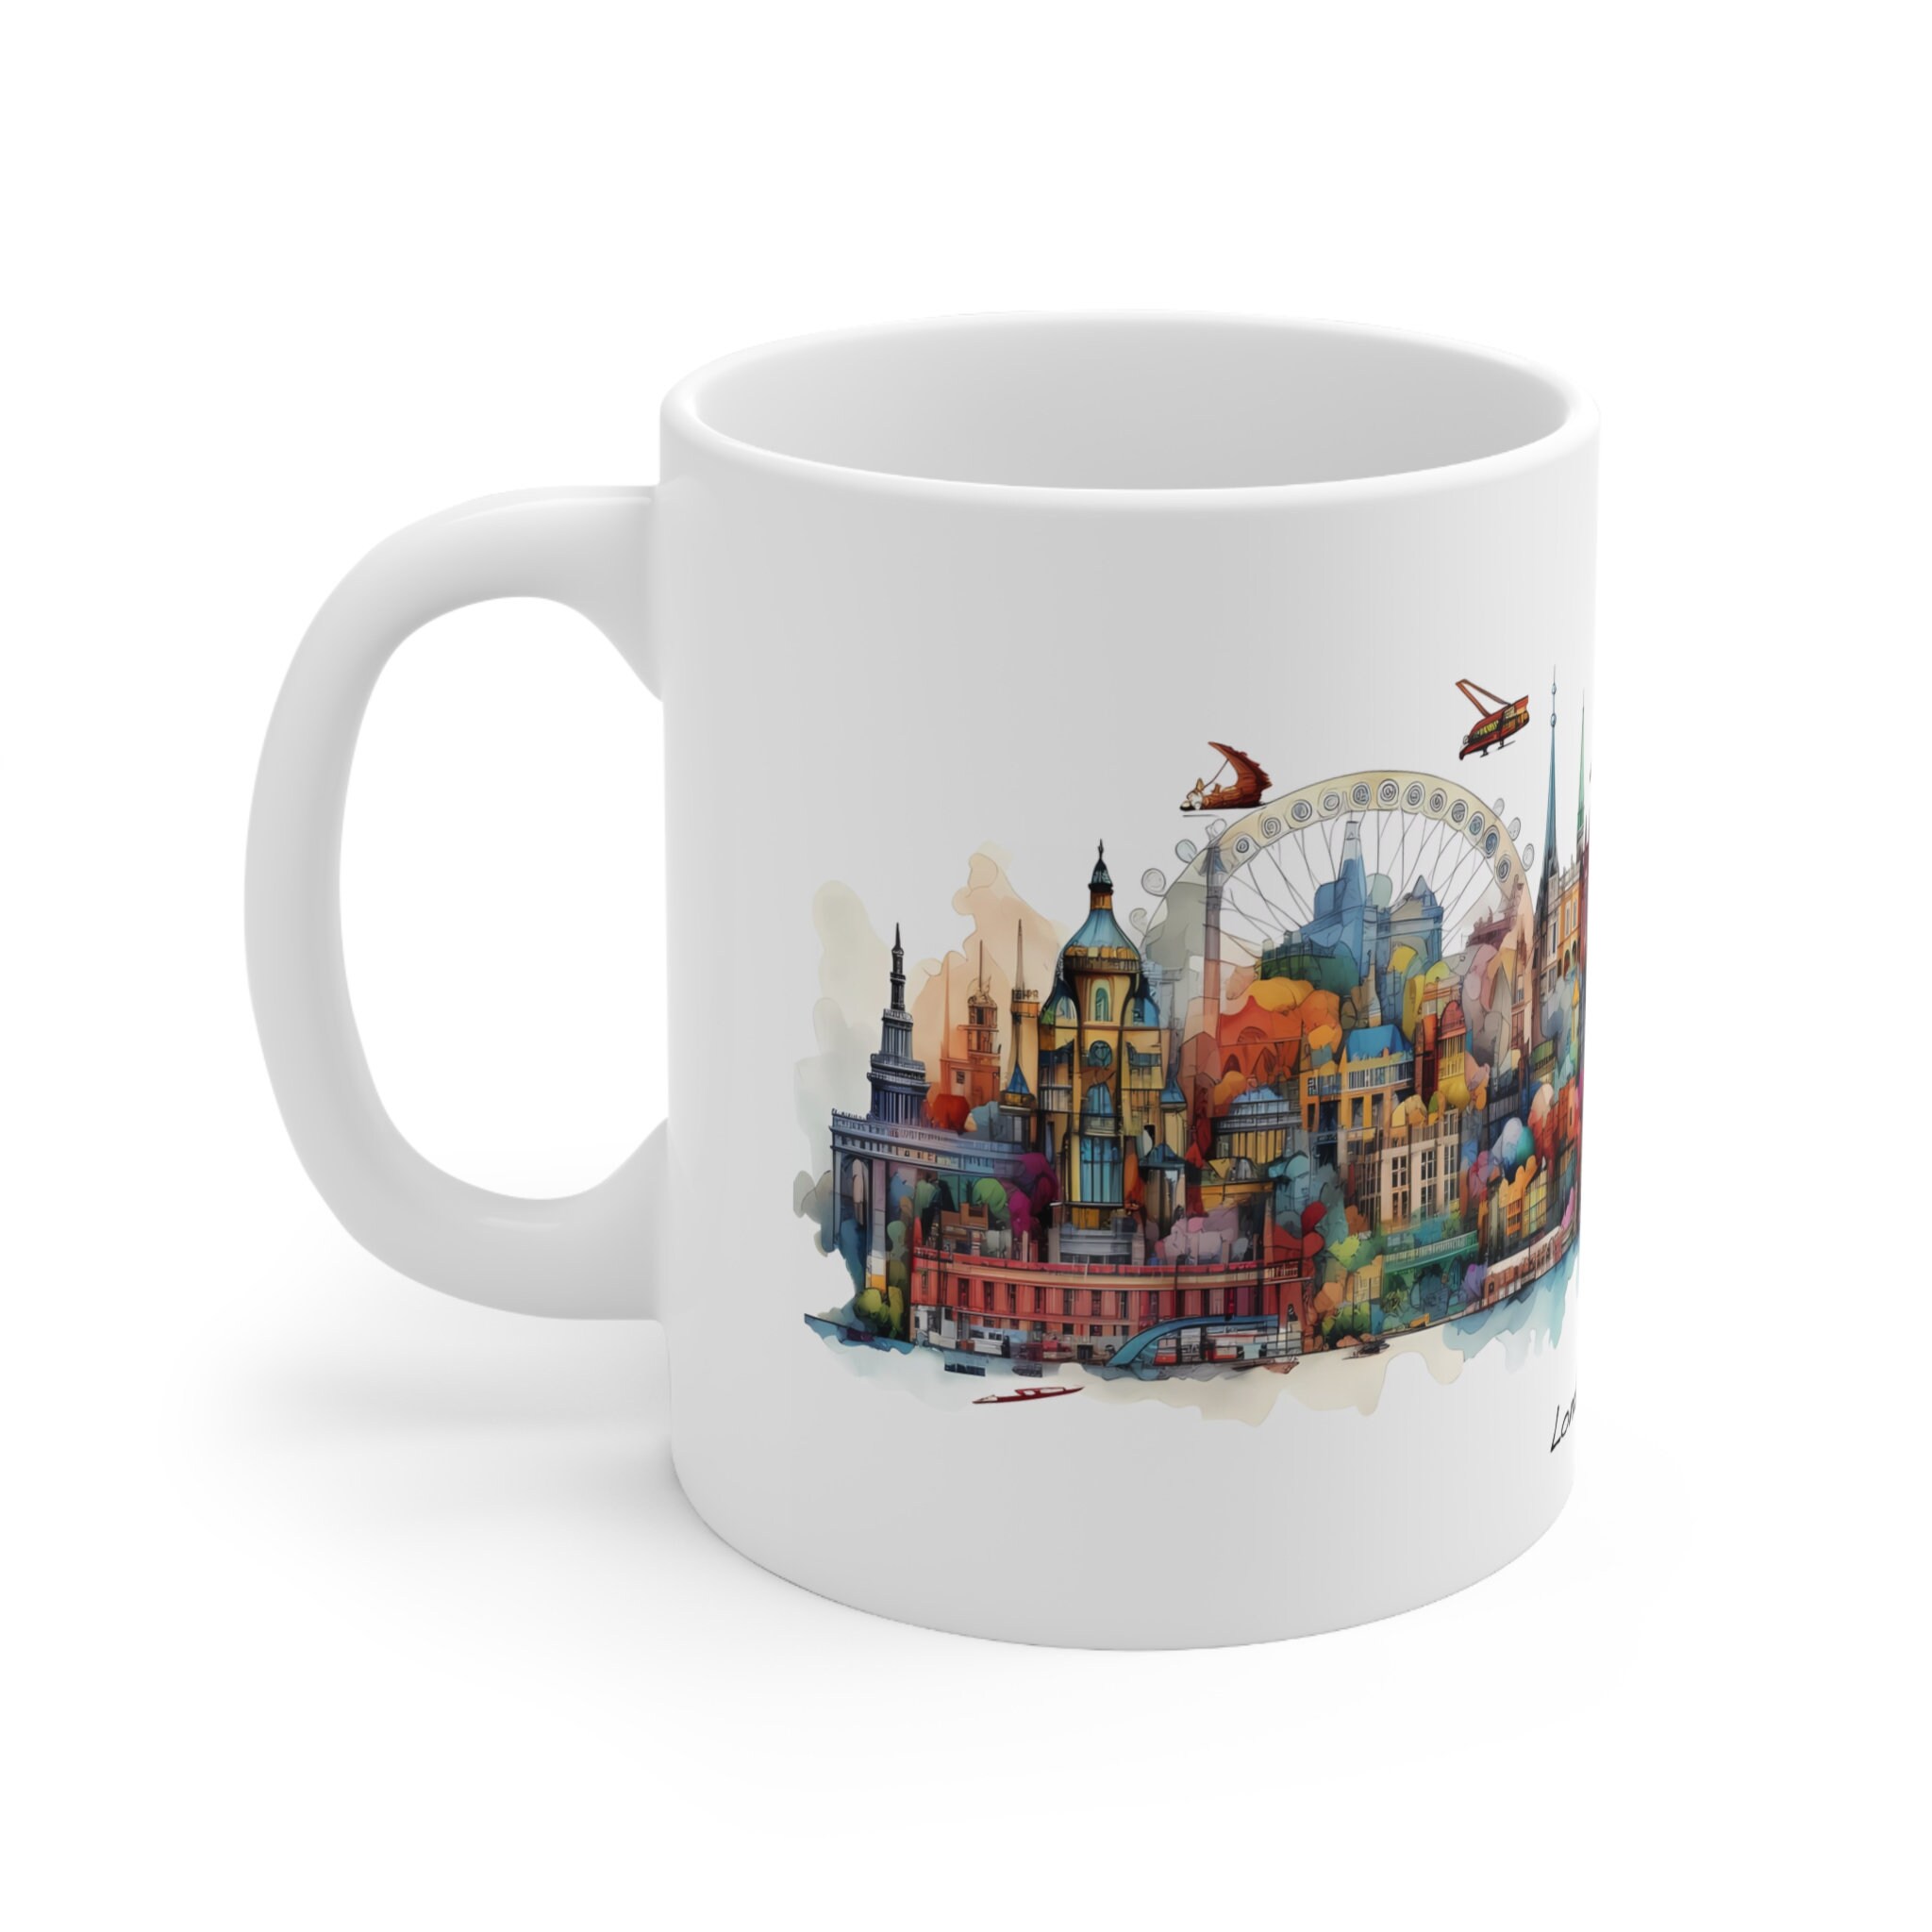 Discover London Mug, England 11oz ceramic mug for coffee, tea and more. Travel souvenir